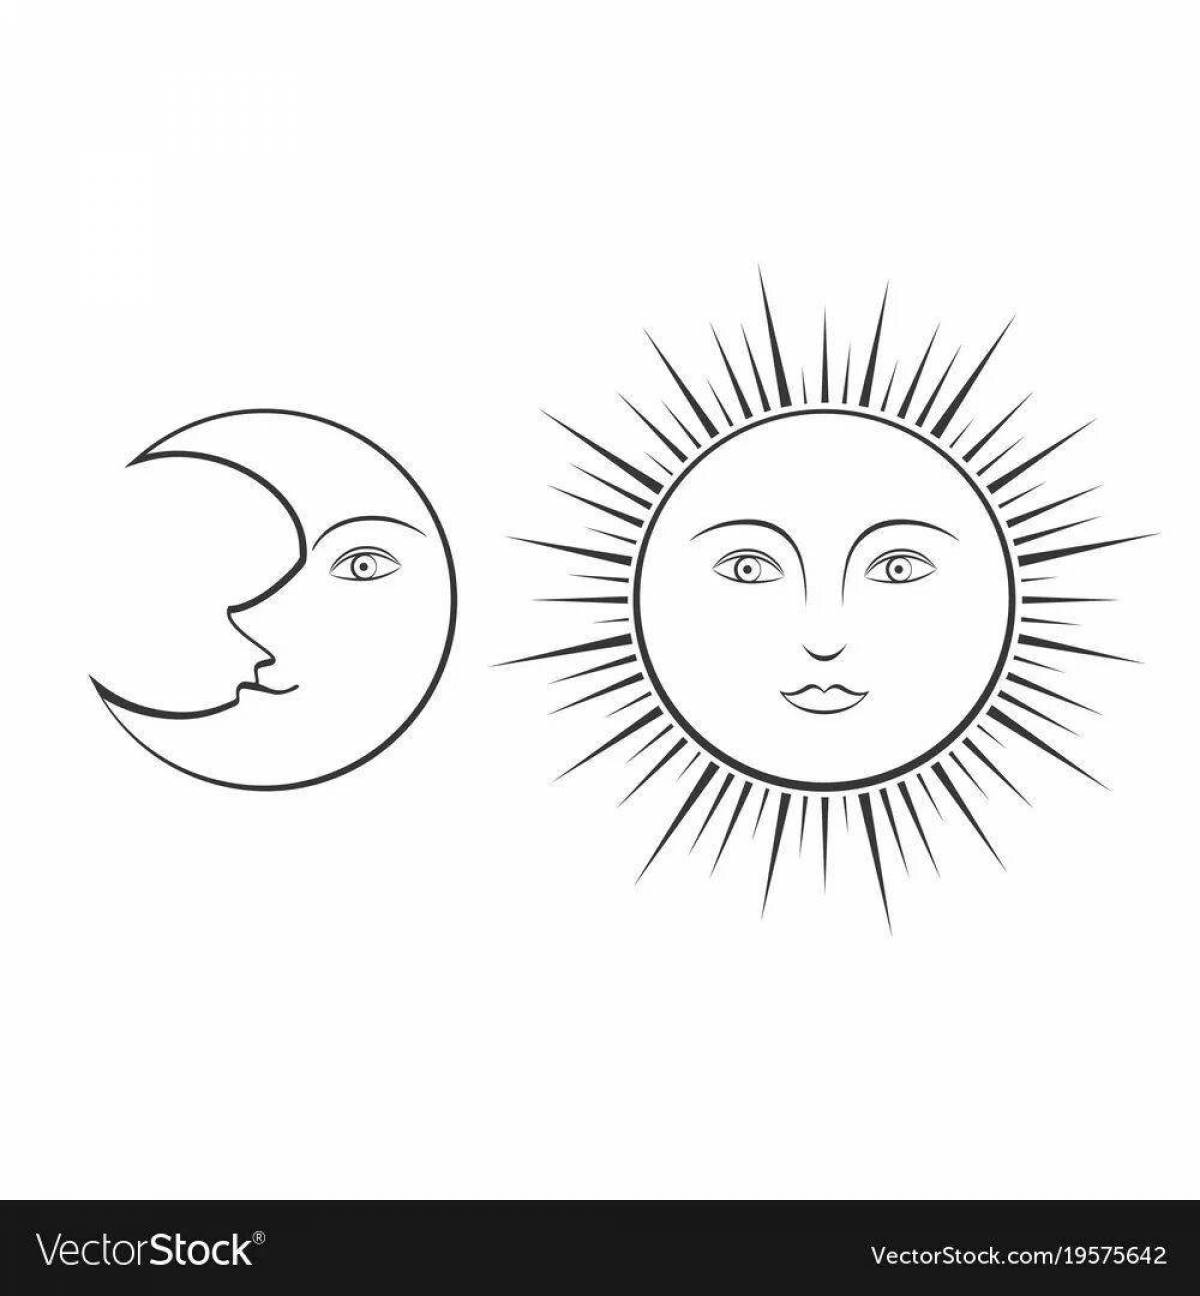 Луна и солнце для детей #3